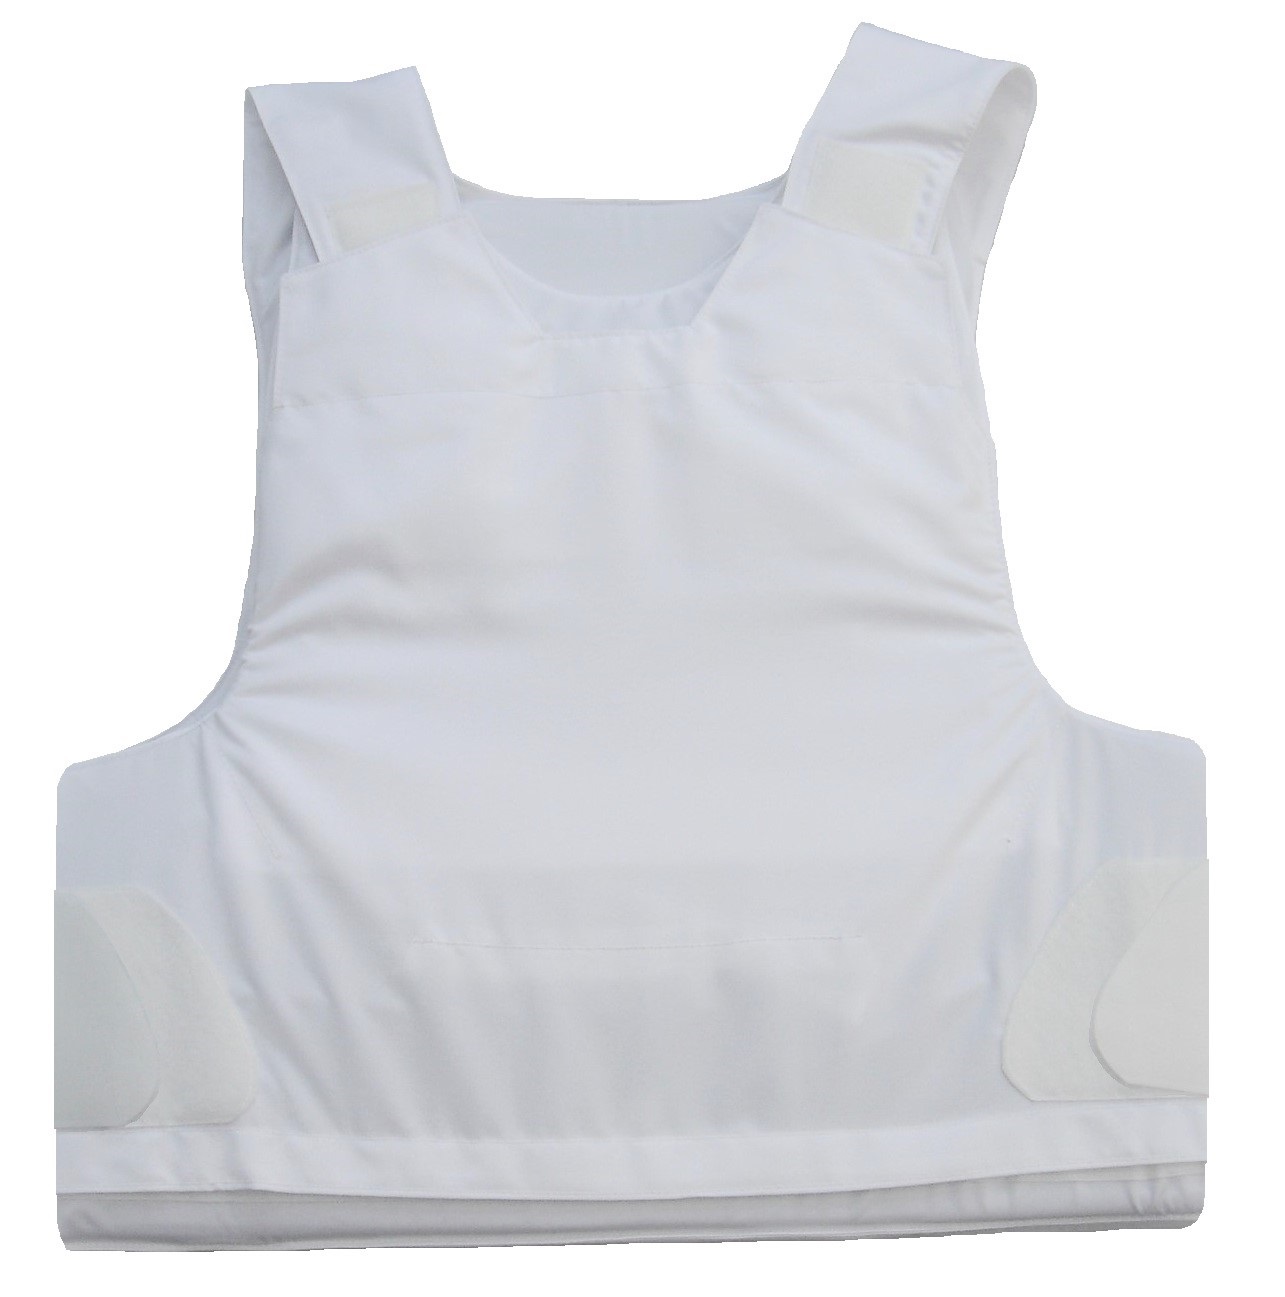 Dual Use ™ NIJ-3A (06) FLEX-PRO white bulletproof vest